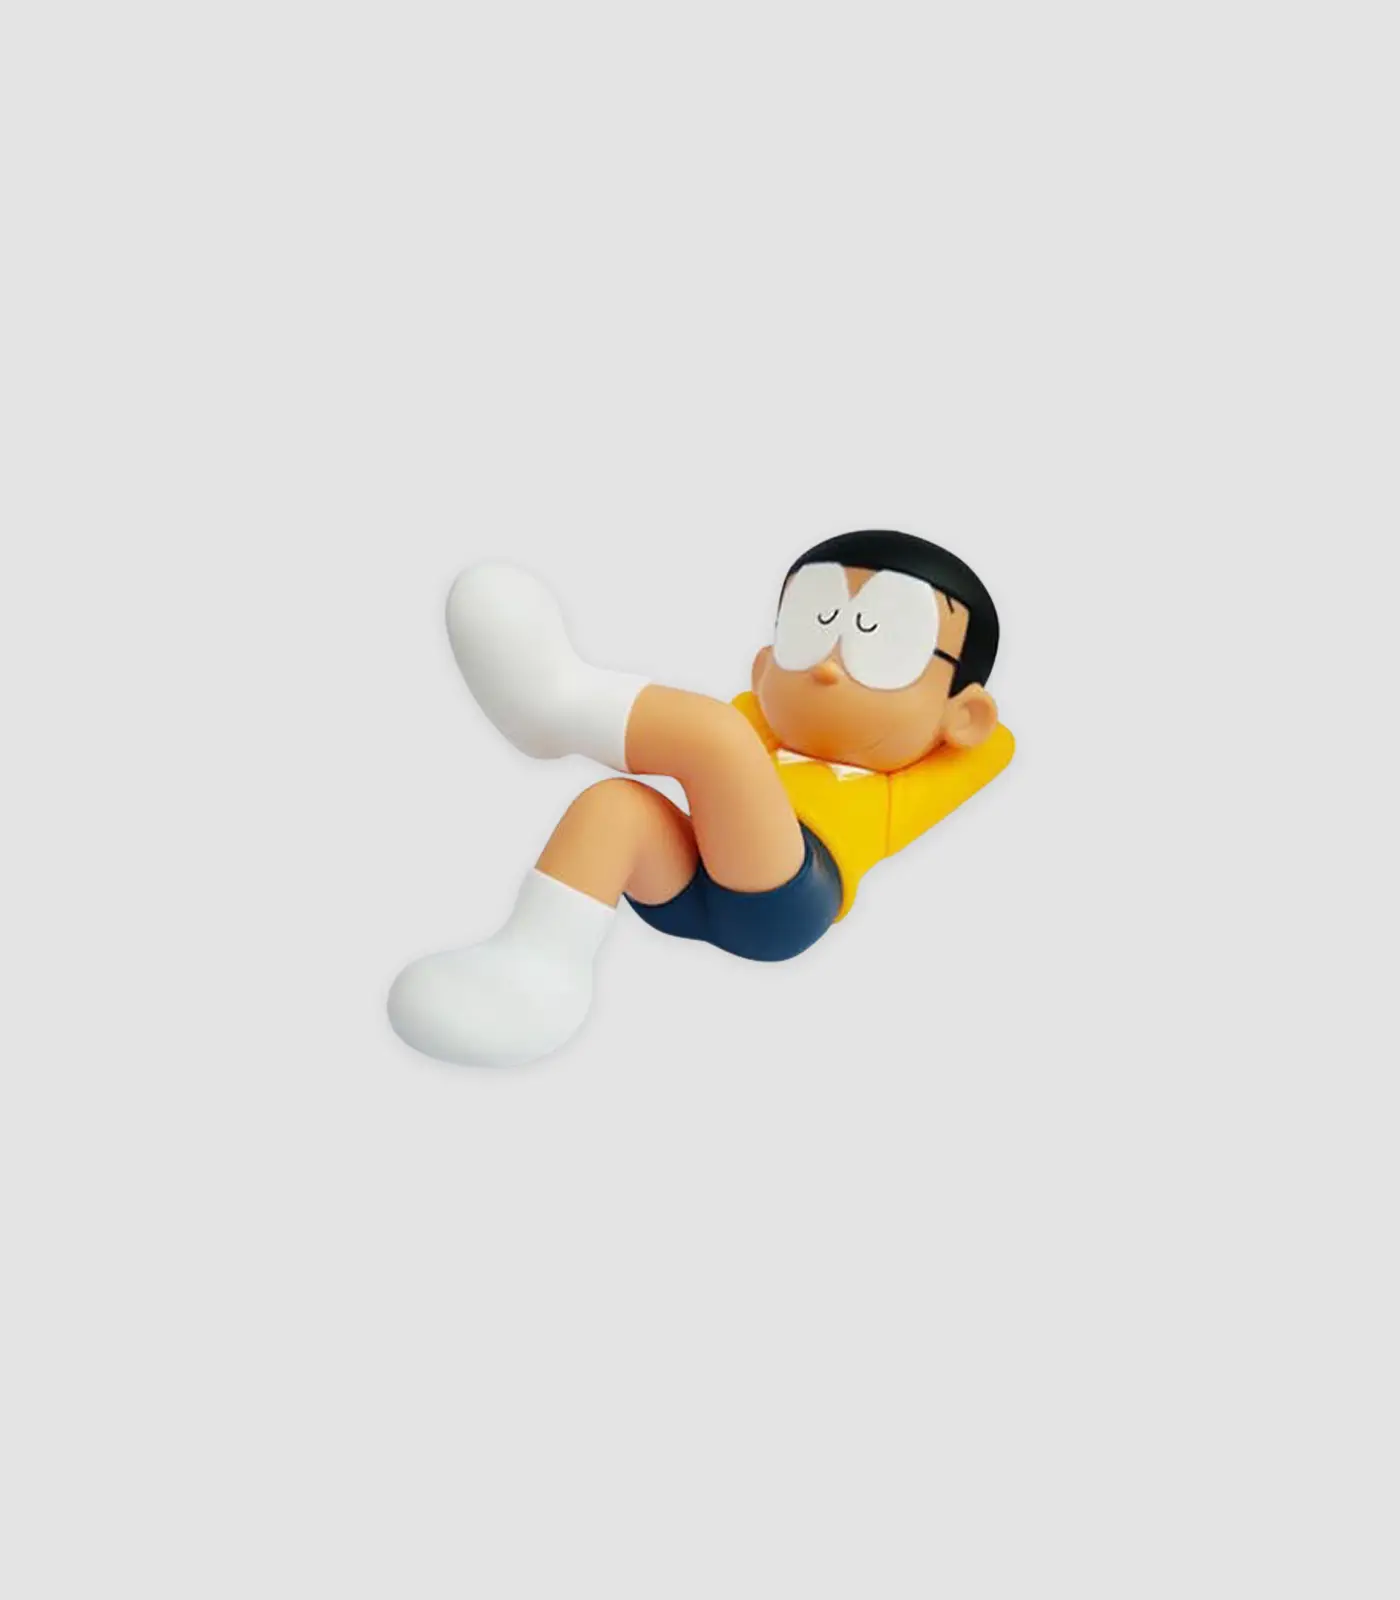 Mô Hình Nobita 18Cm Nằm Ểnh Ương | Góc Cảm Hứng